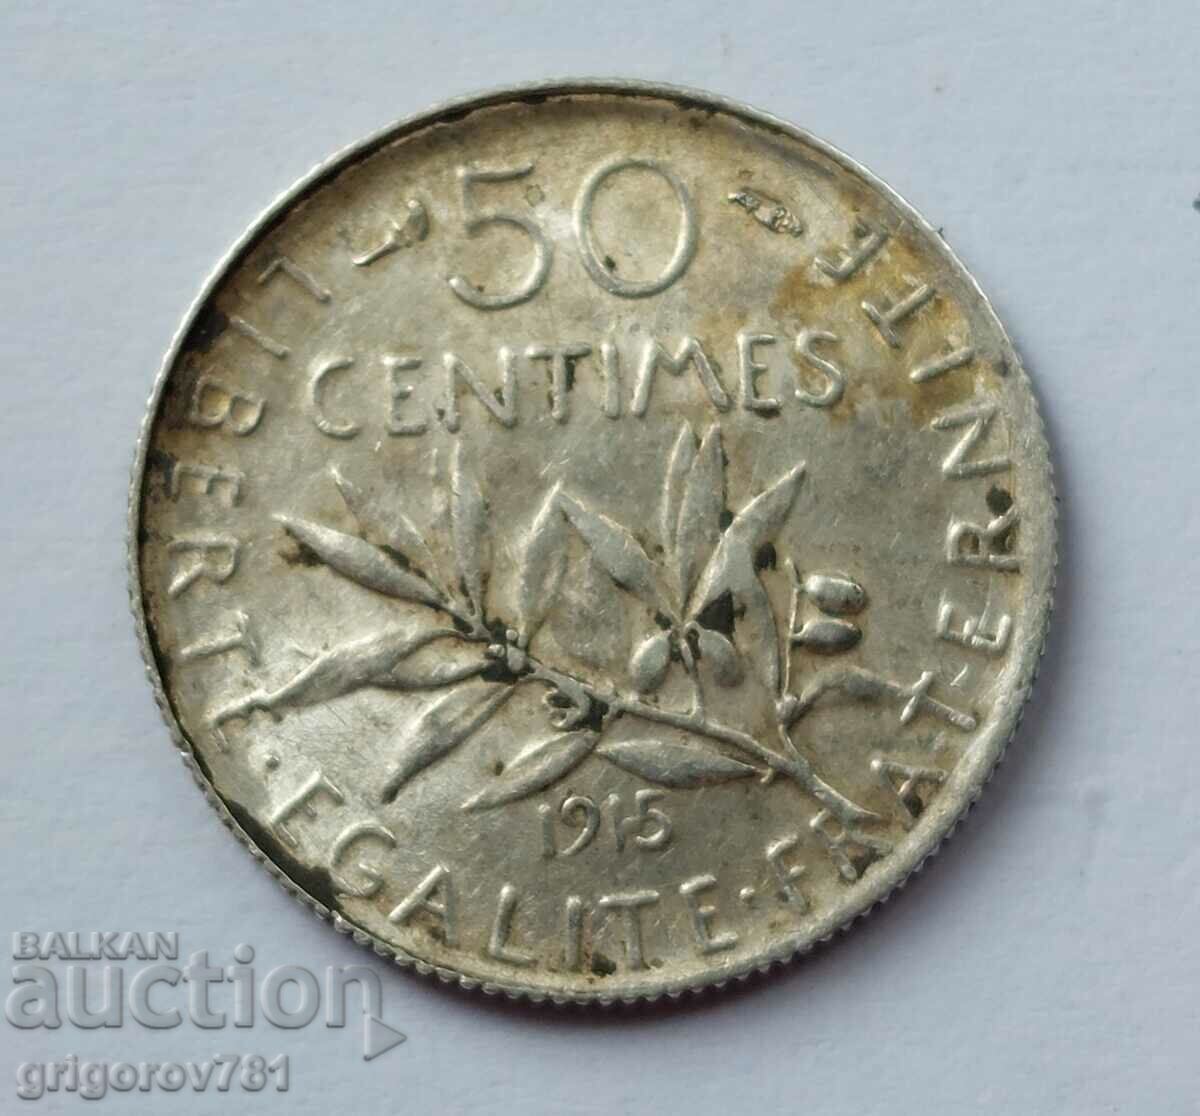 Ασημένιο 50 εκατοστά Γαλλία 1915 - ασημένιο νόμισμα №61